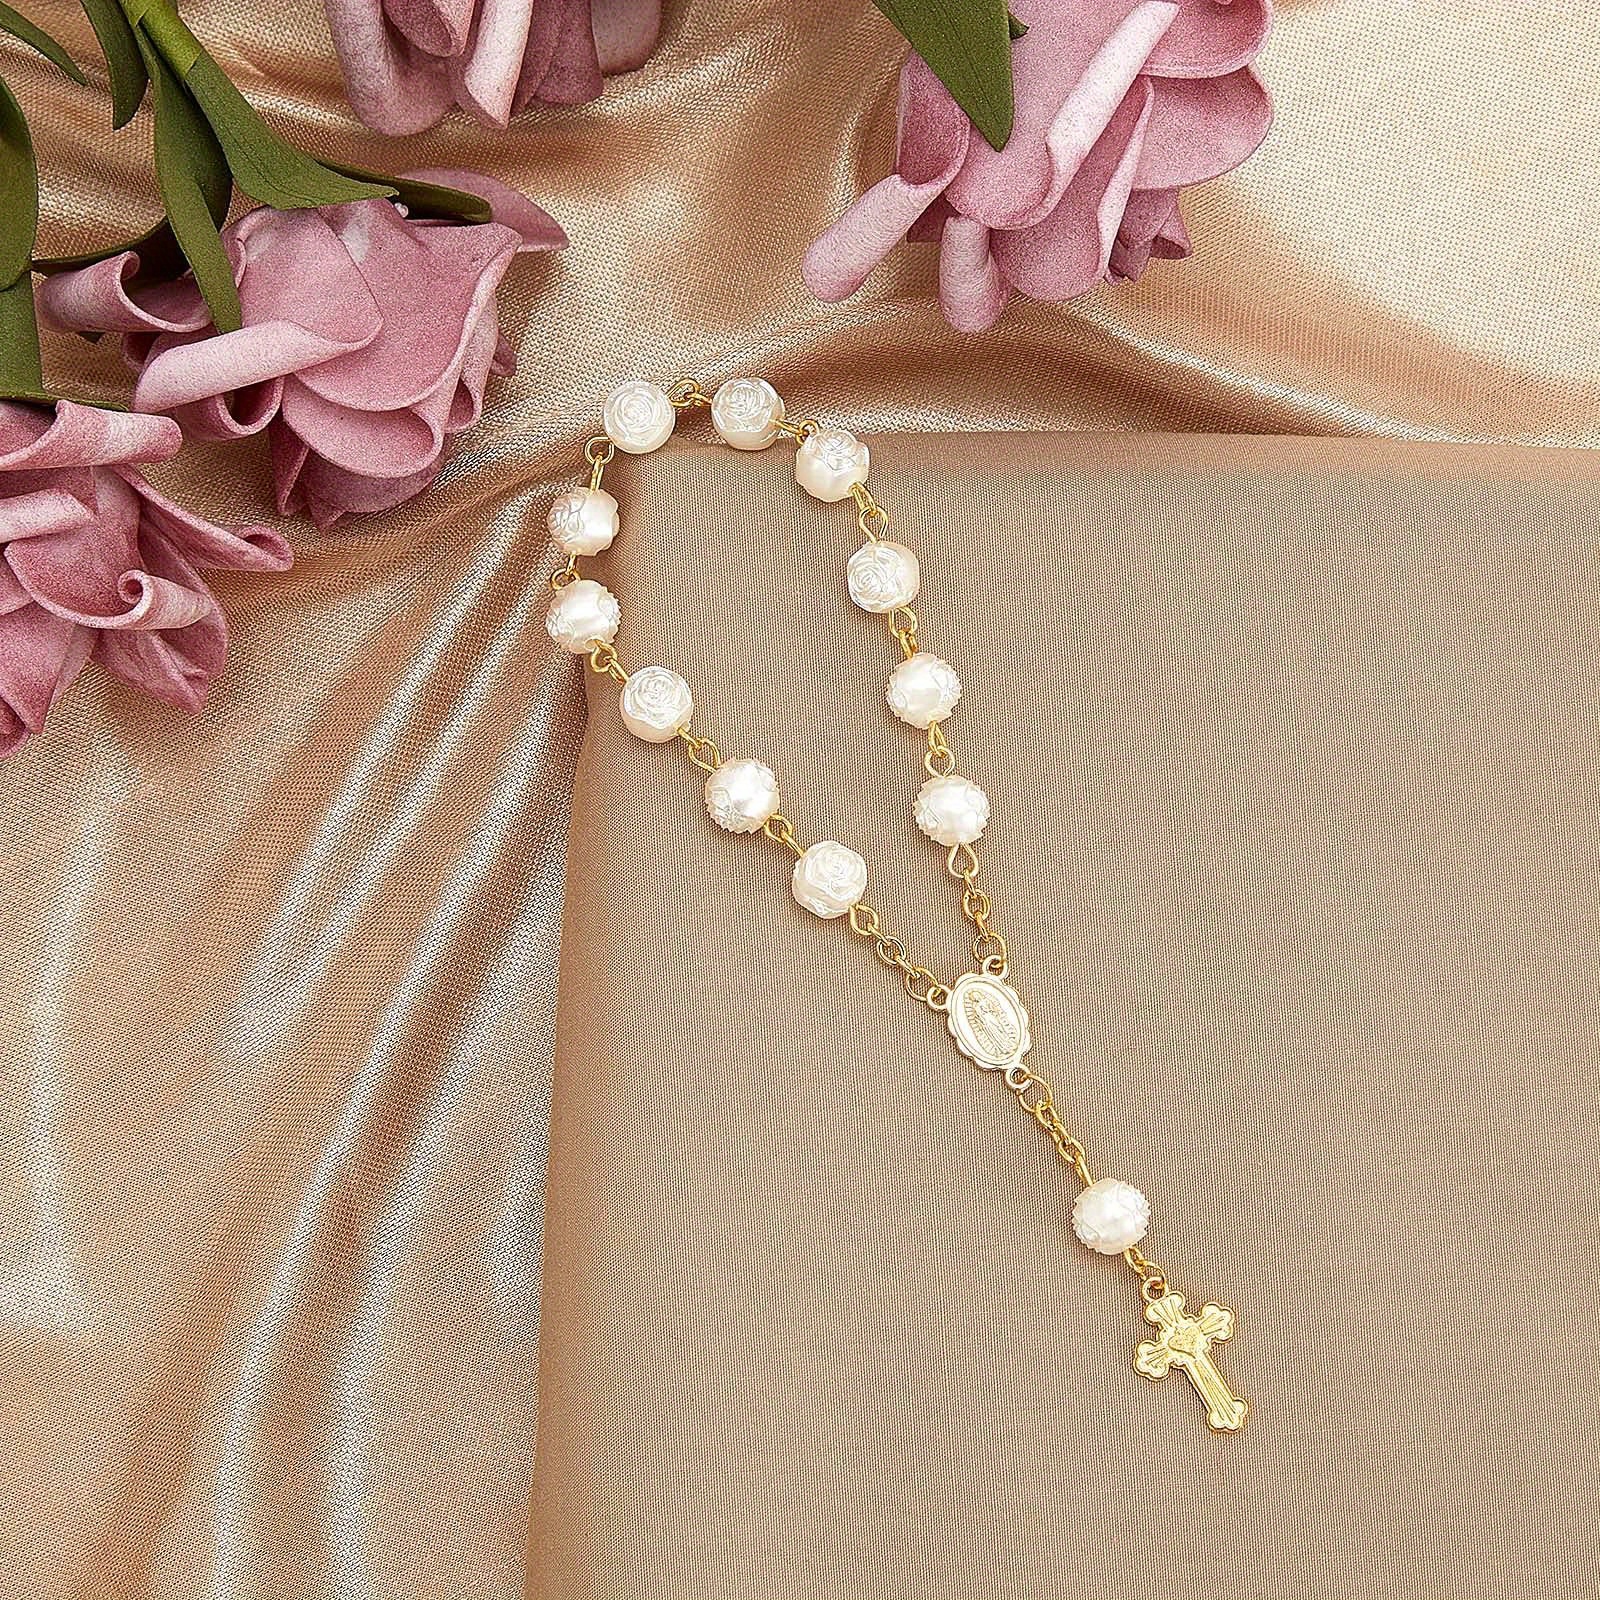 3.5 Gold Miniature Rose Bead Rosaries - Pack of 100 Mini Rosary